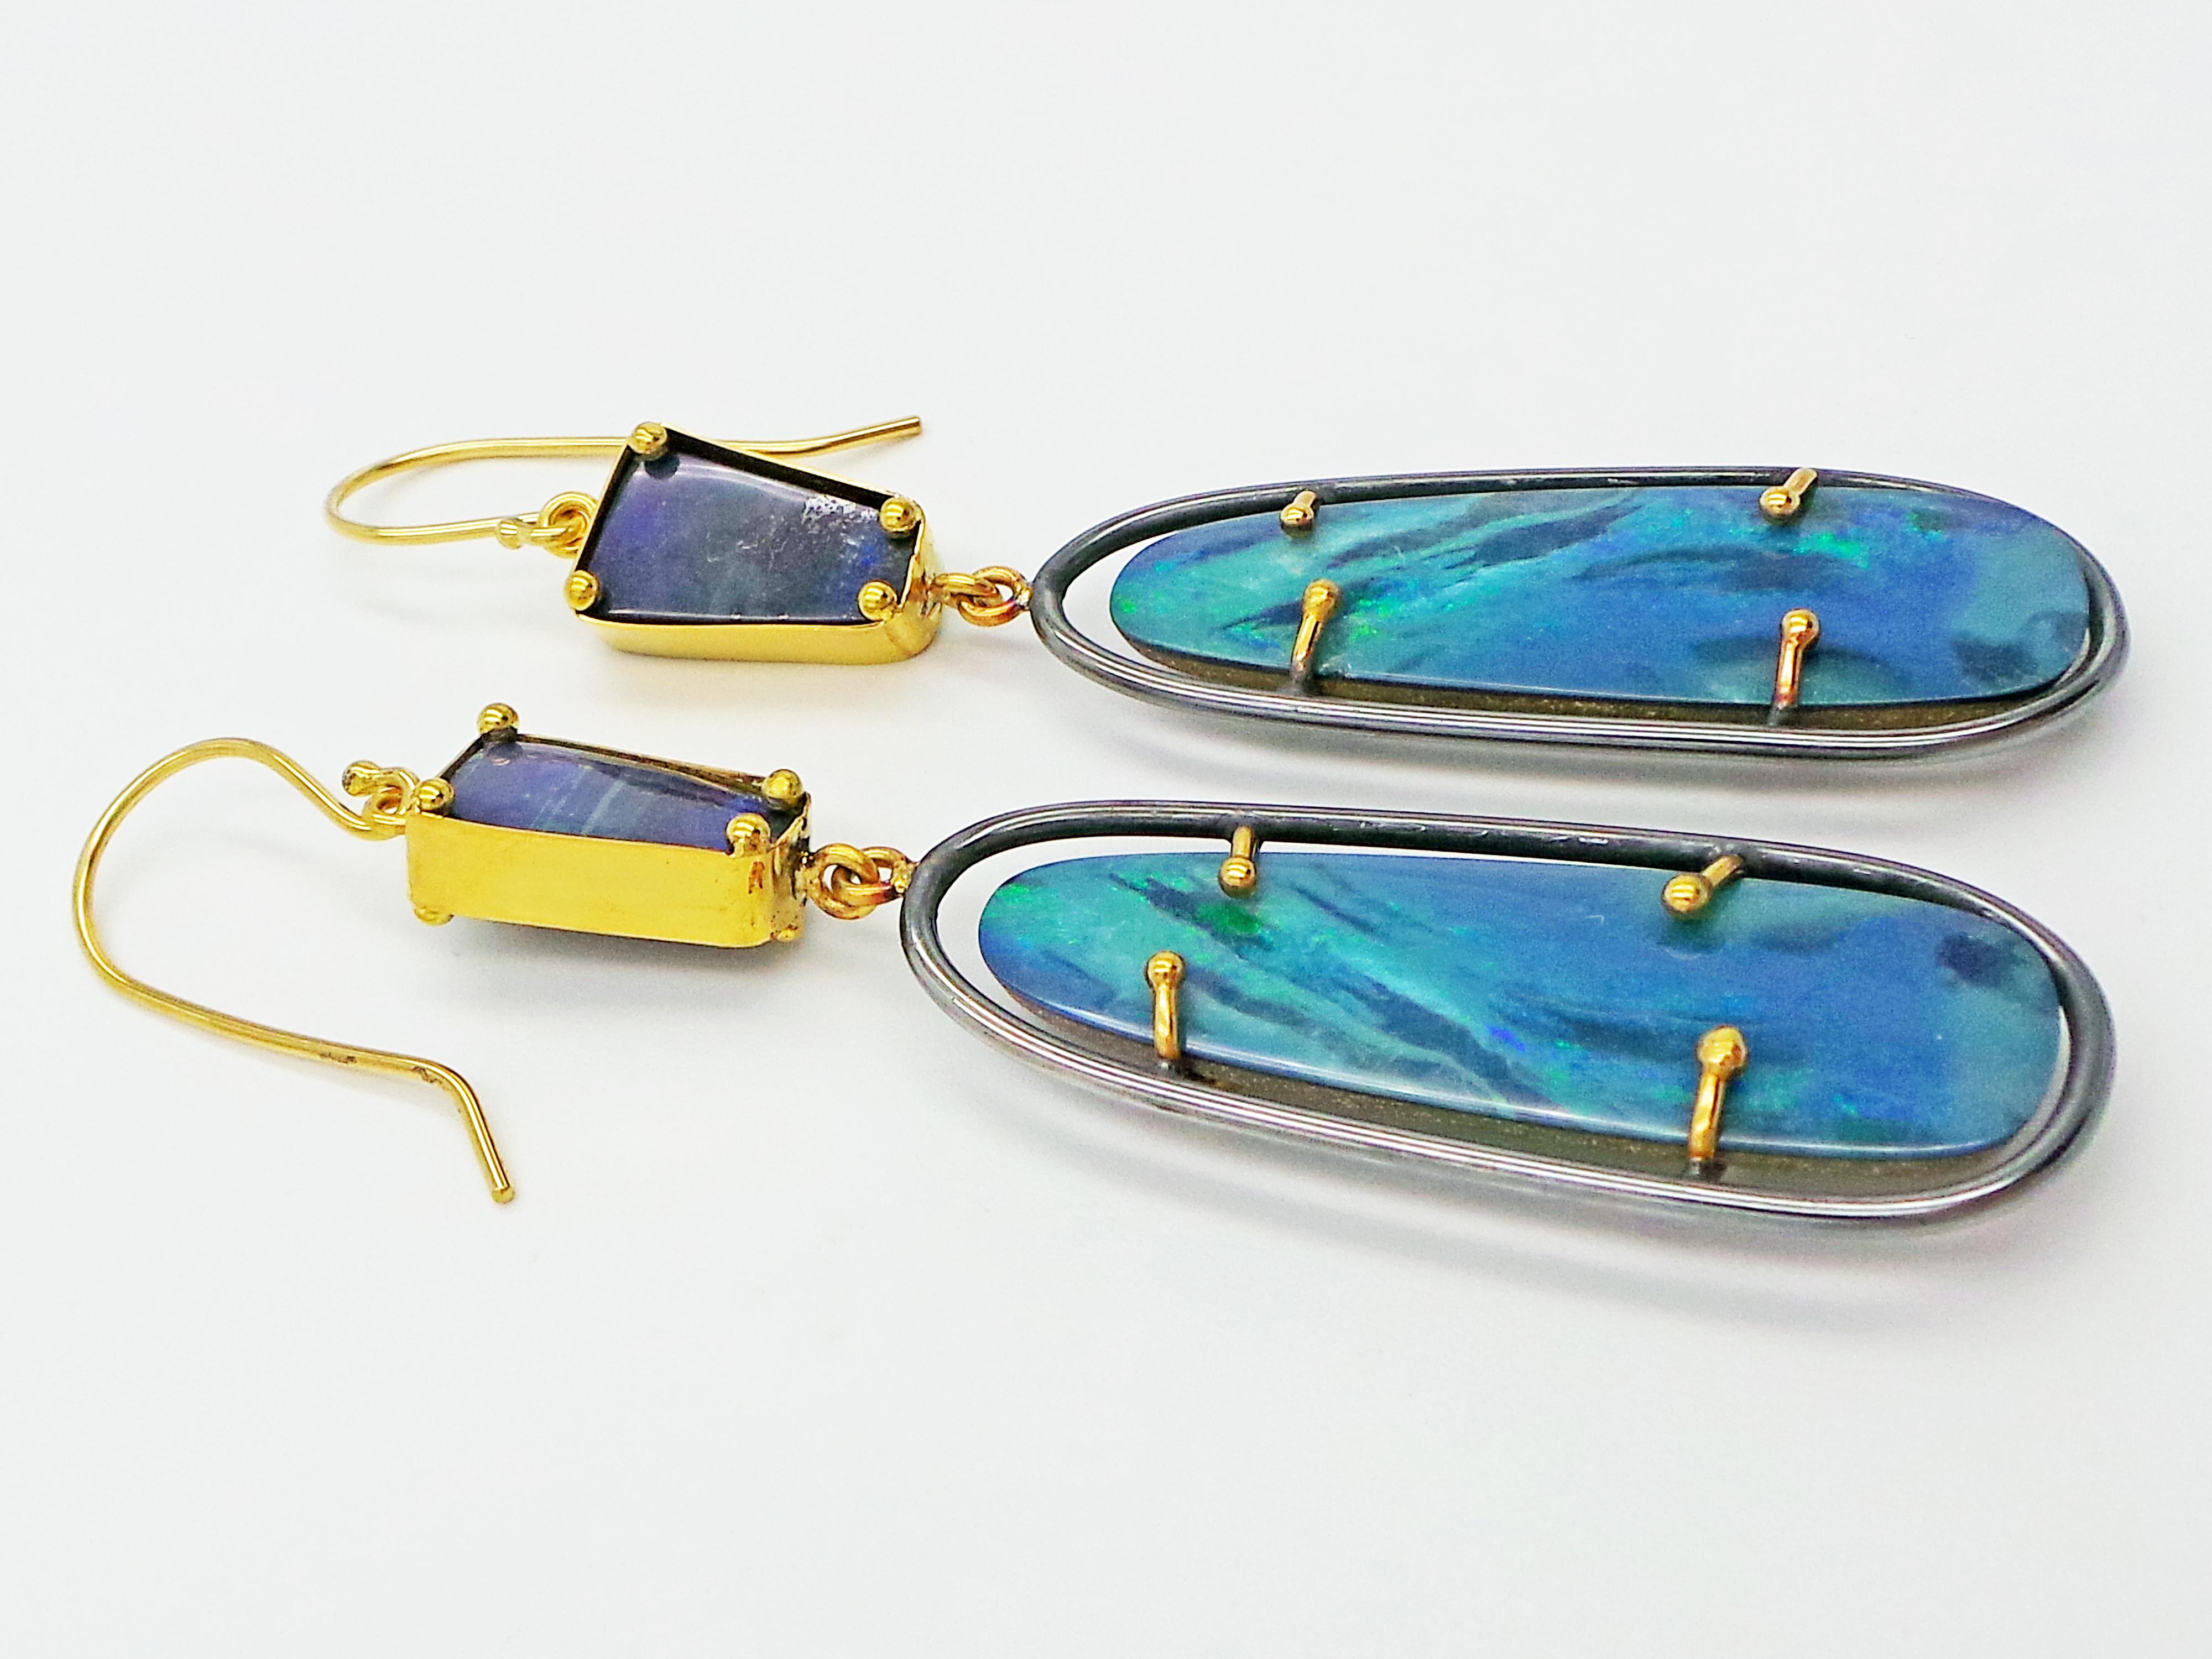 Oxidiertes Sterlingsilber und 22k Gelbgold handgefertigte Ohrringe mit erstaunlichen grün-blauen australischen Boulder-Opalen. Einzigartige, schöne und einzigartige handwerkliche Ohrringe.